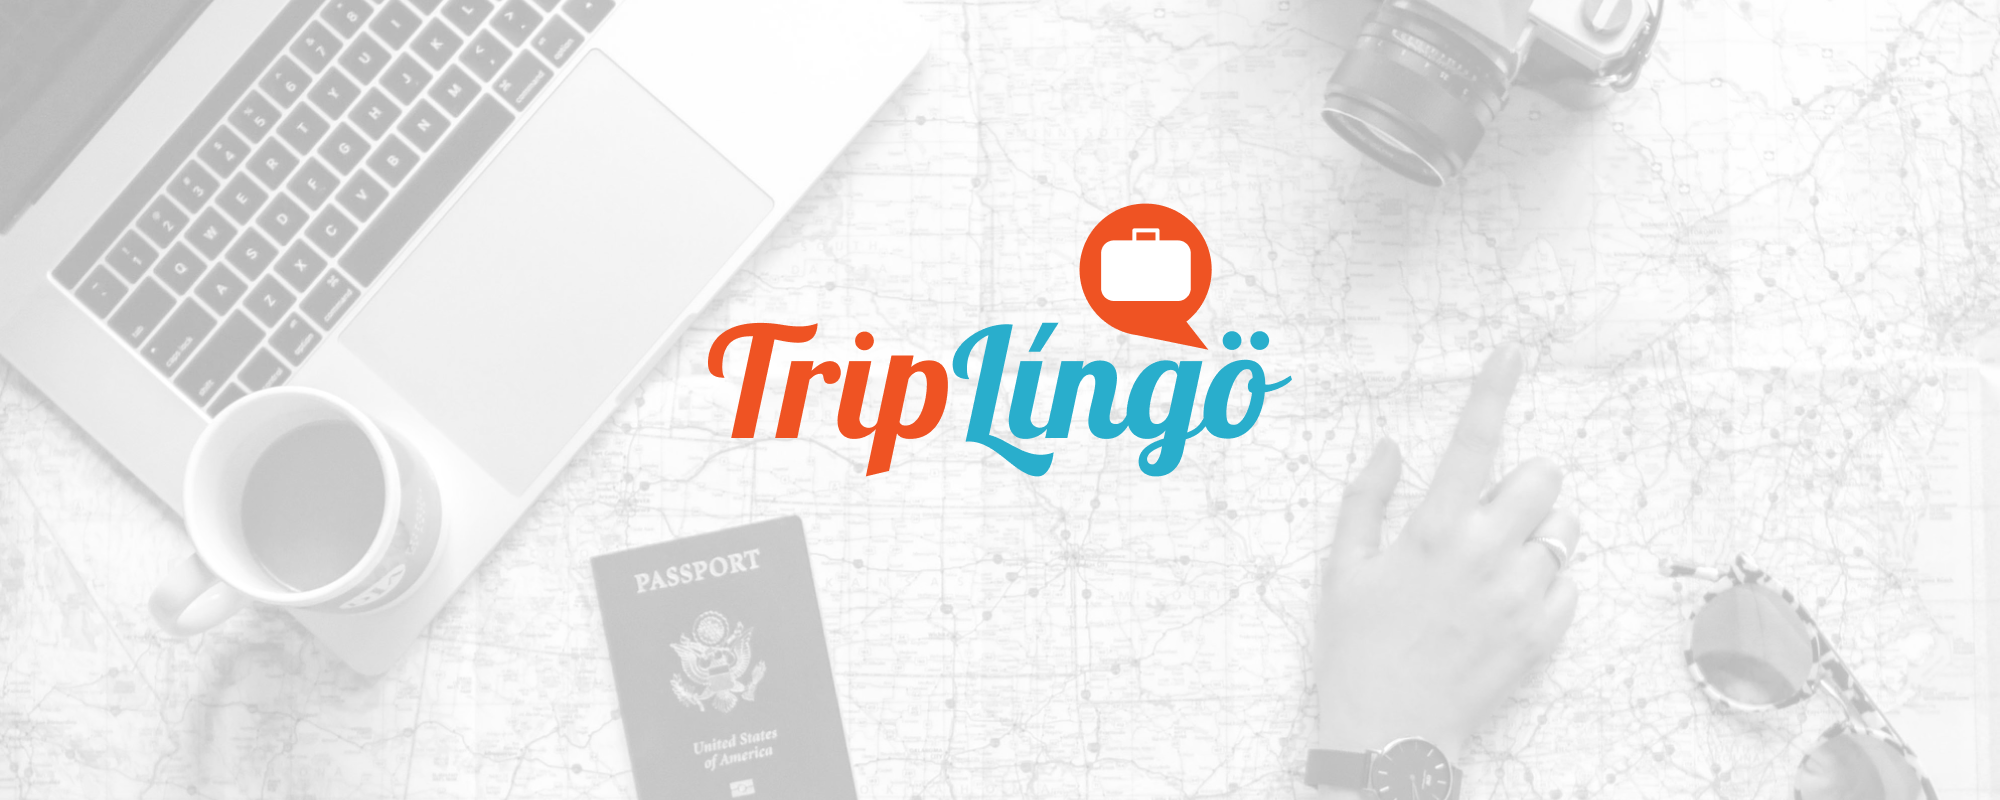 Triplingo Review: is it worth it?